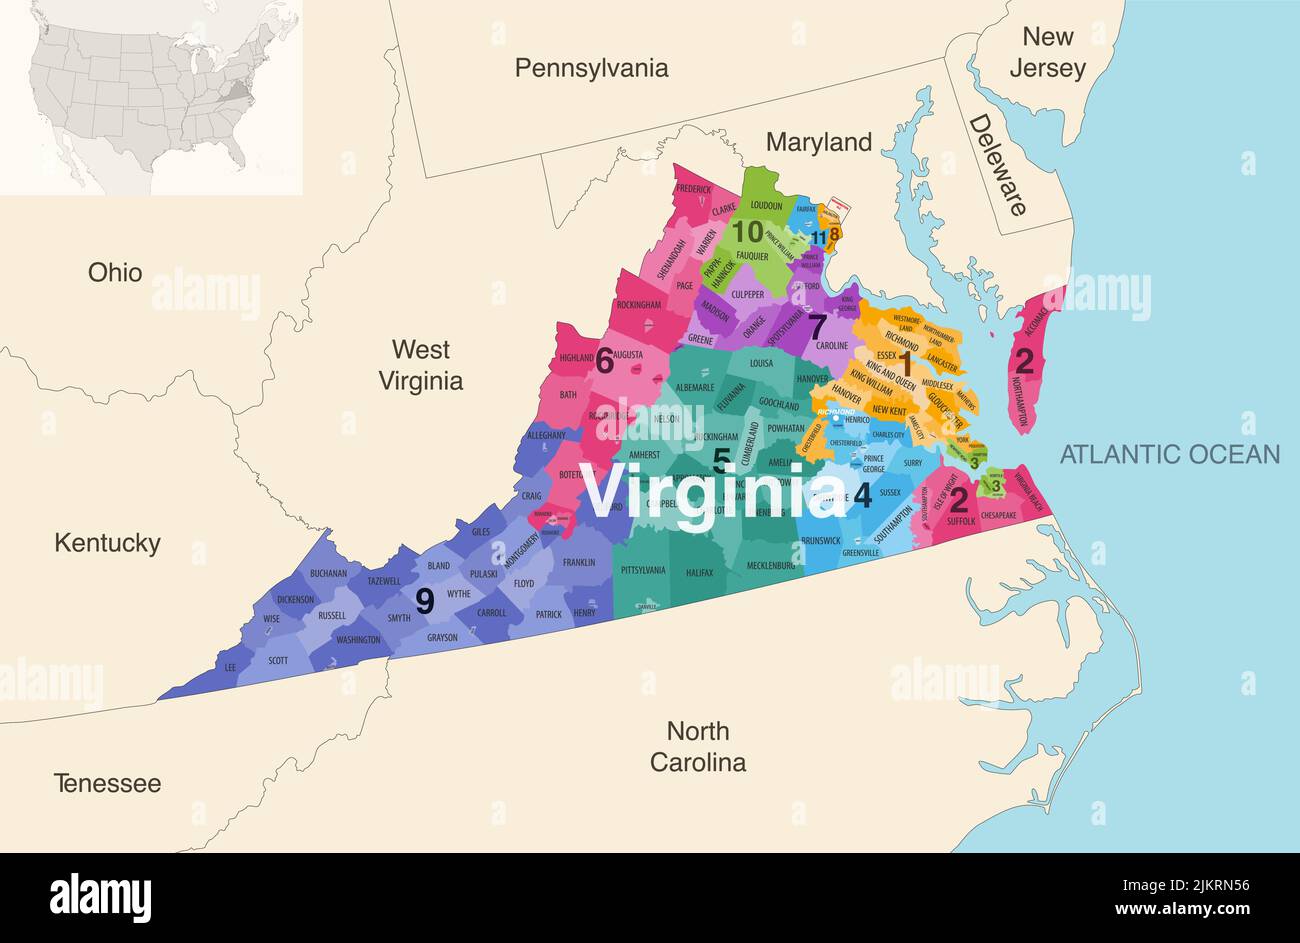 Le contee dello stato della Virginia sono colorate da una mappa vettoriale dei distretti del Congresso con gli stati vicini e le terrotorie Illustrazione Vettoriale